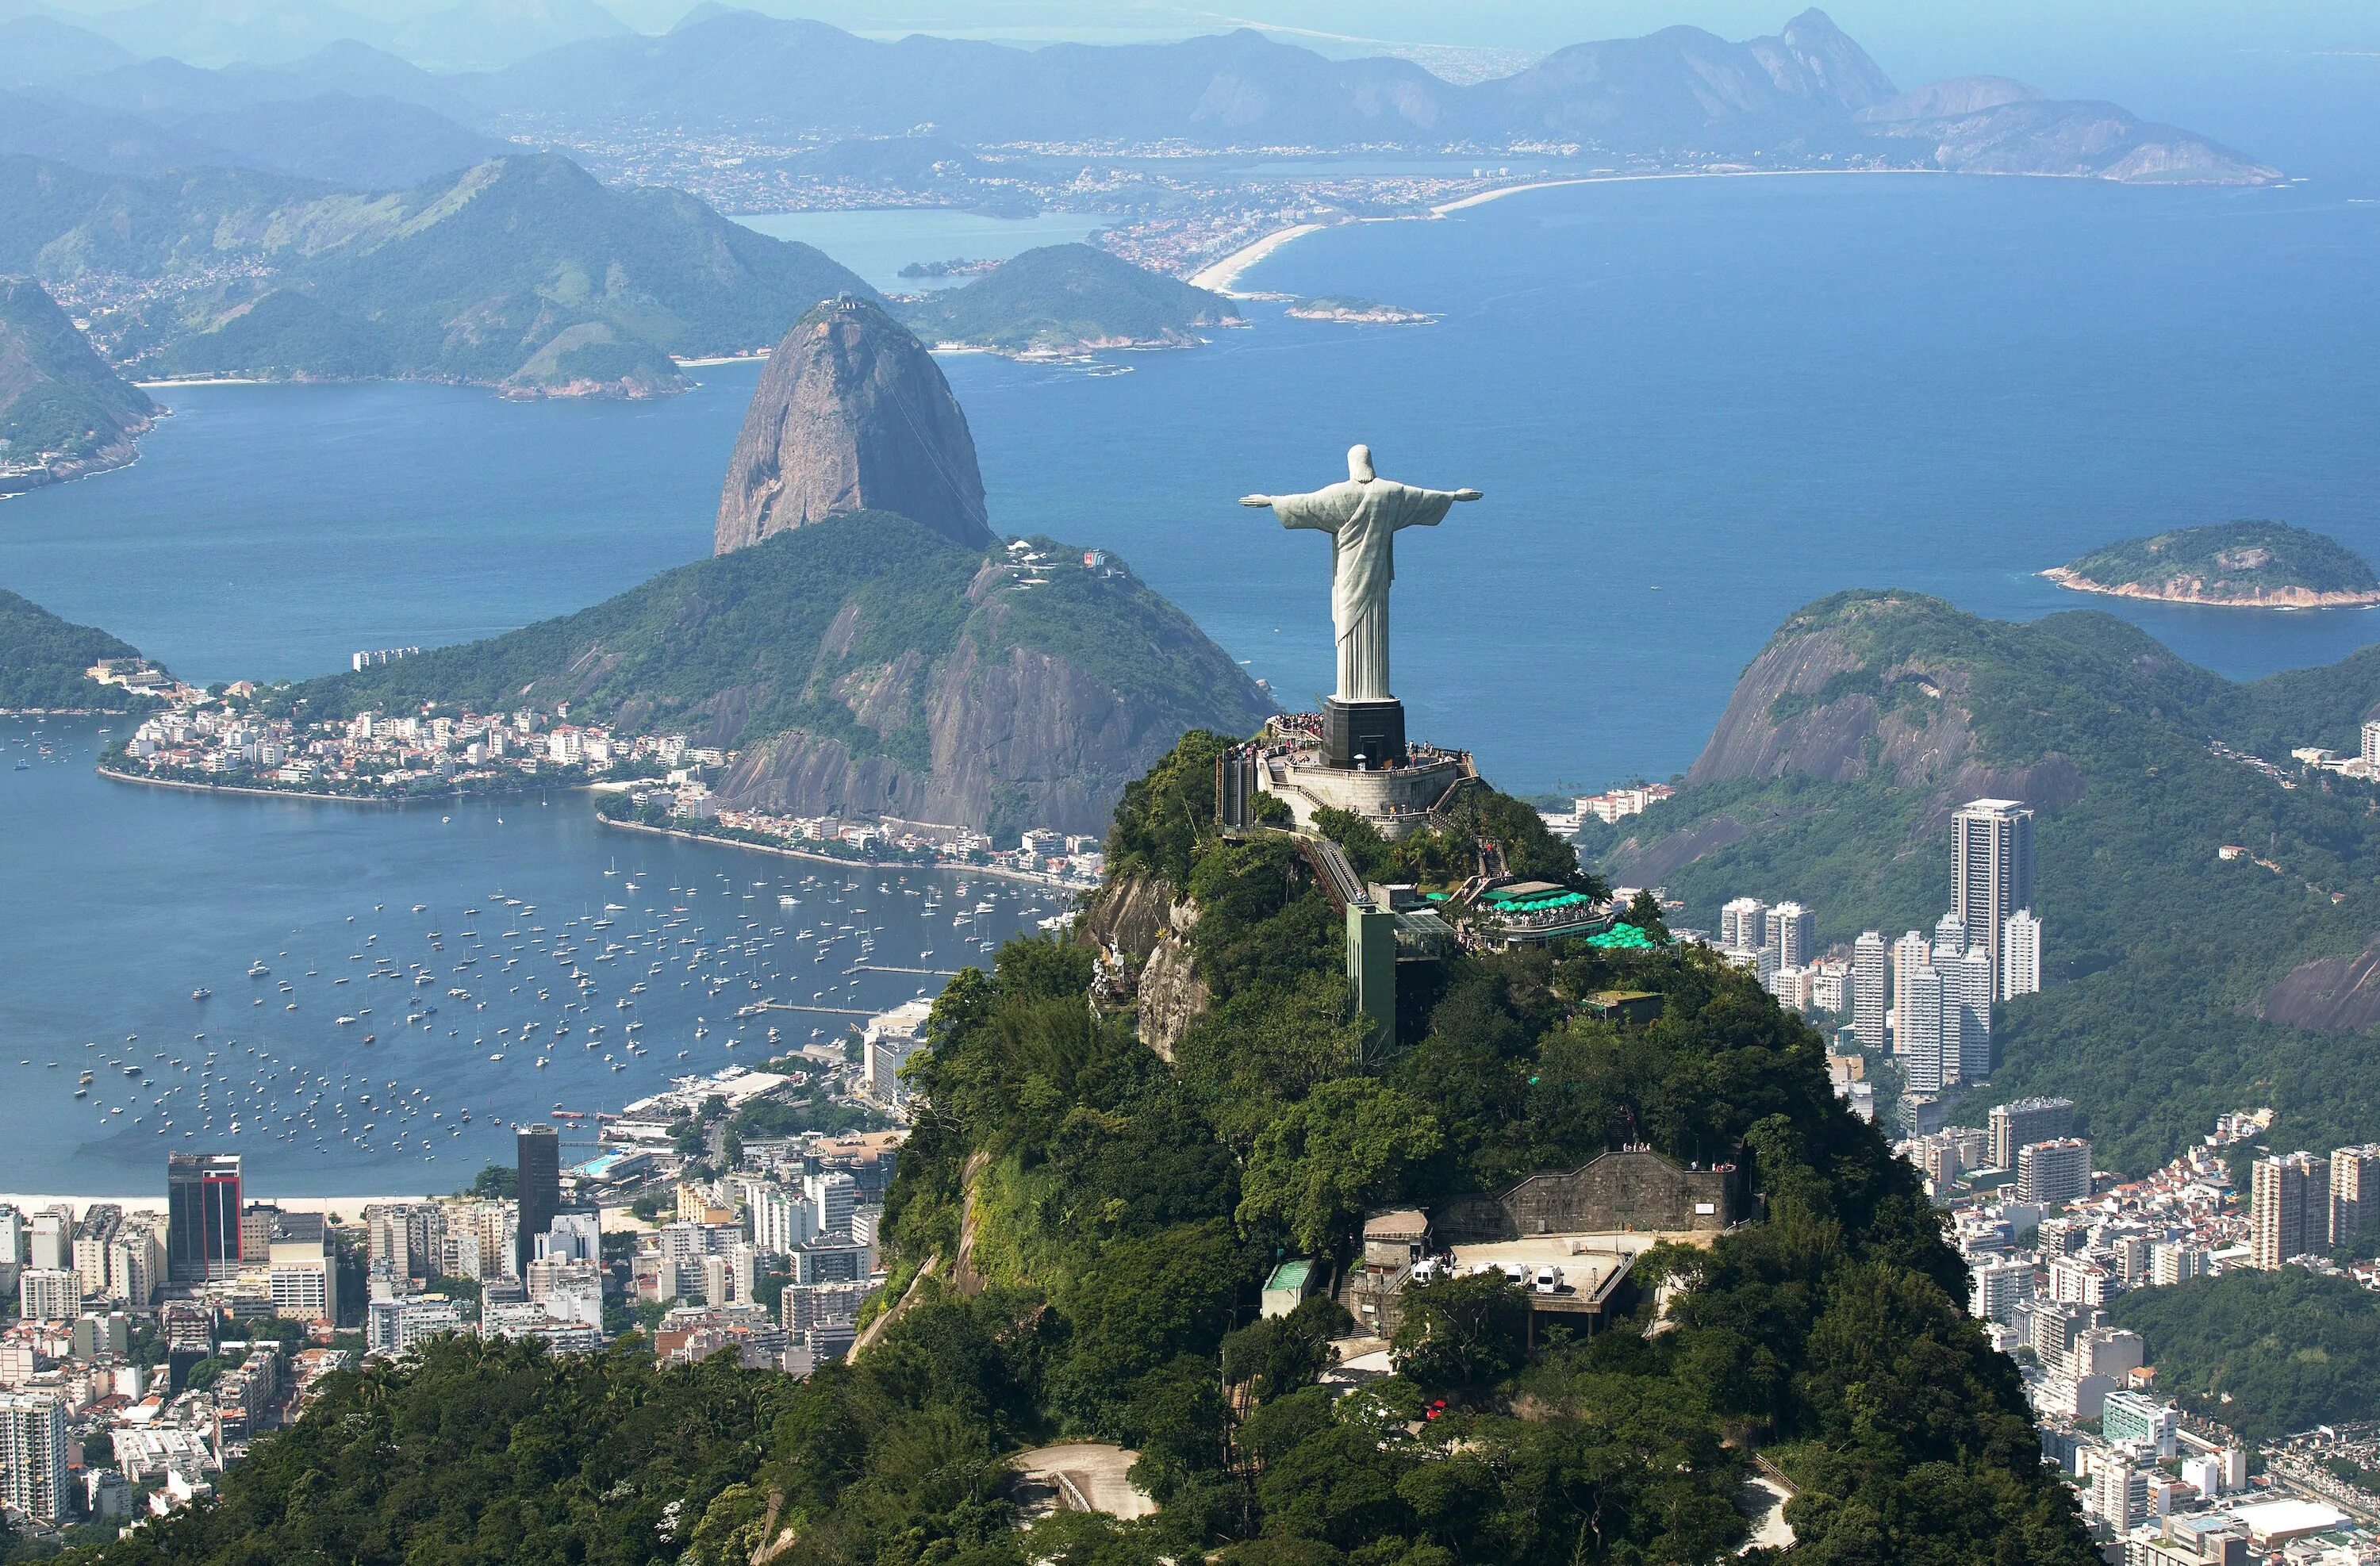 Достопримечательности Рио-де-Жанейро Бразилия. Южная Америка Рио де Жанейро. Статуя Христа-Искупителя Бразилия. Рио де Жанейро достопримечательности.